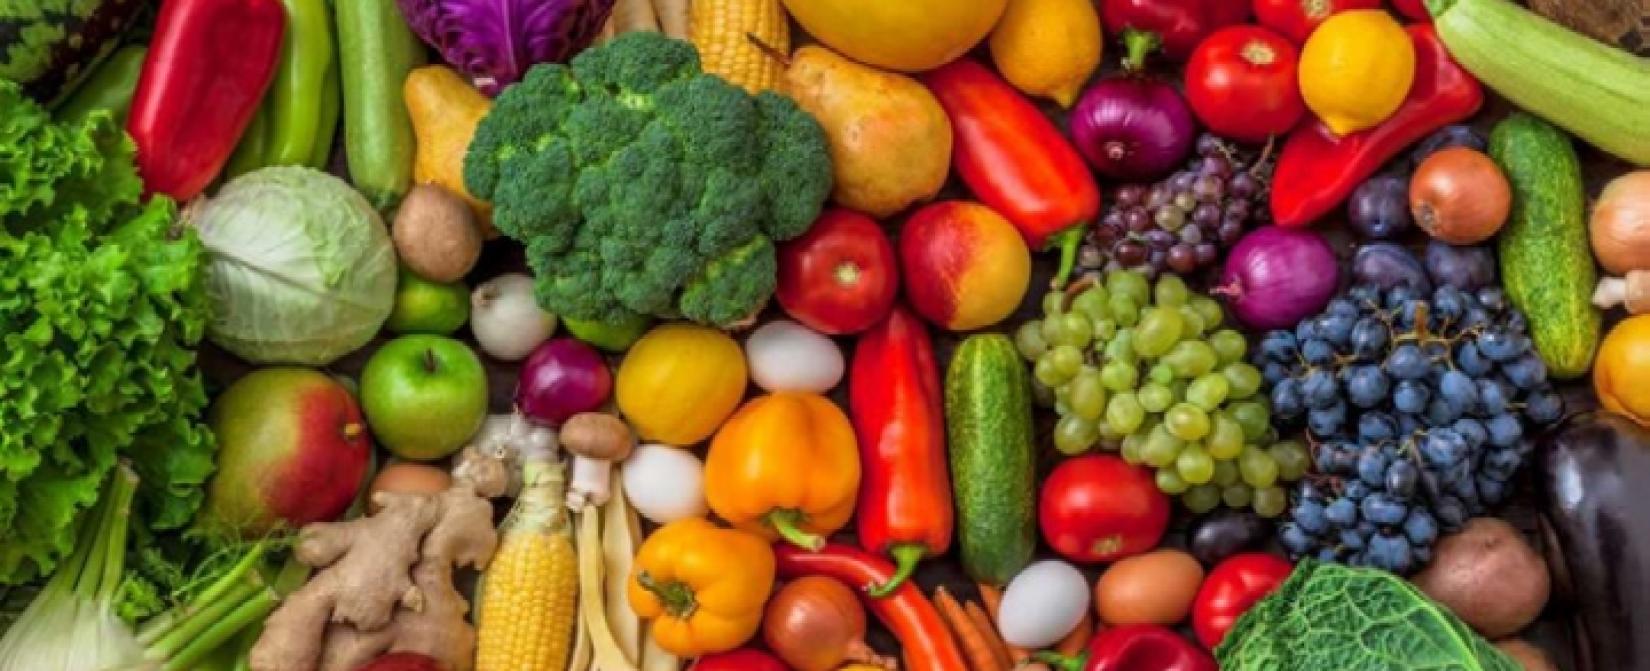 No Ano Internacional das Frutas e Vegetais a ONU vai aumentar a conscientização sobre os benefícios nutricionais e para a saúde do consumo de frutas e vegetais.